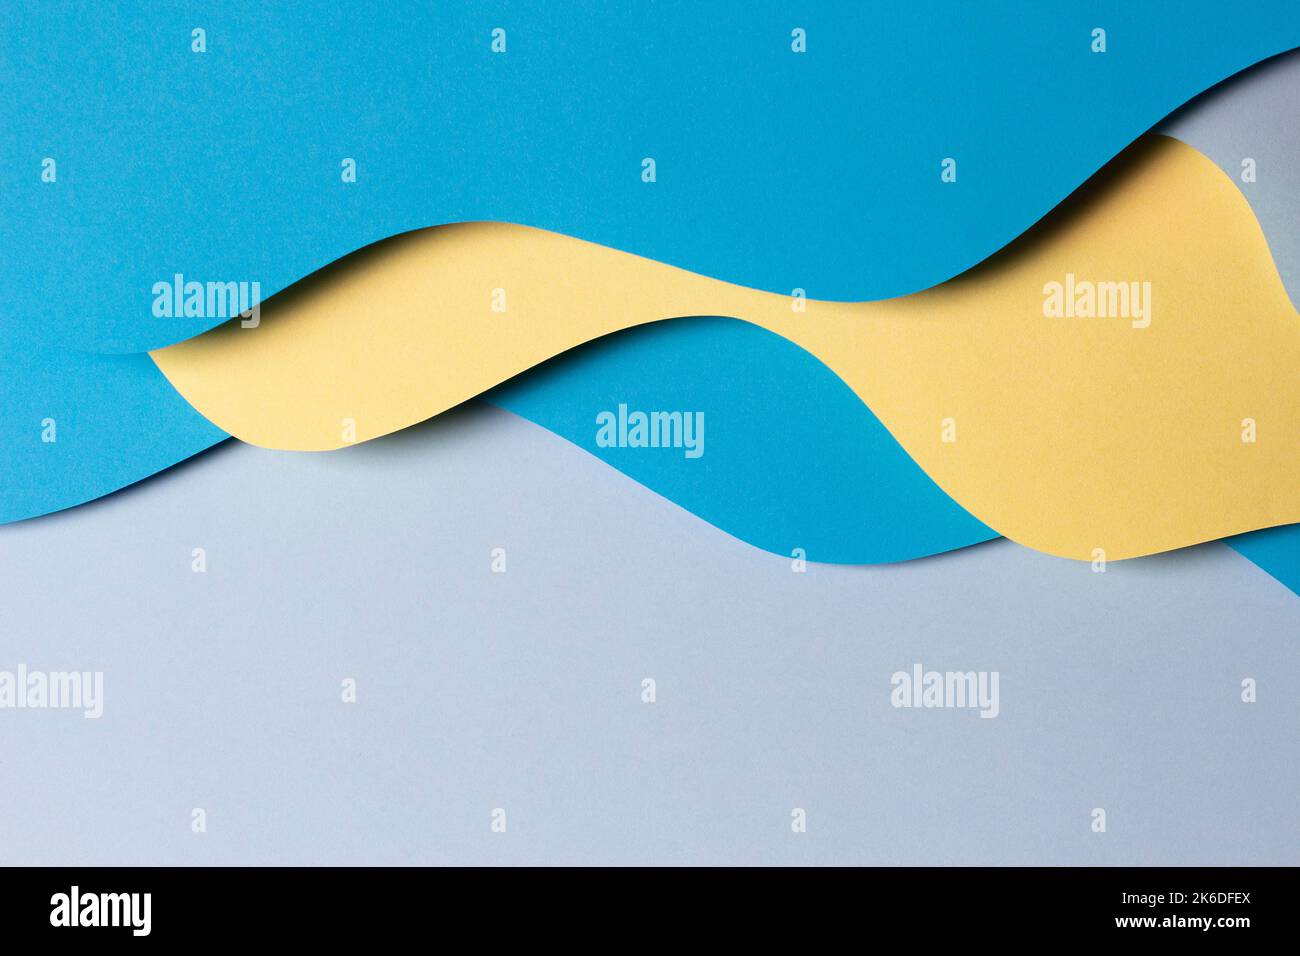 Abstrakt farbigen Papier Textur Hintergrund. Minimale Papierzusammensetzung mit Schichten geometrischer Formen und Linien in gelben und hellblauen Farben Stockfoto